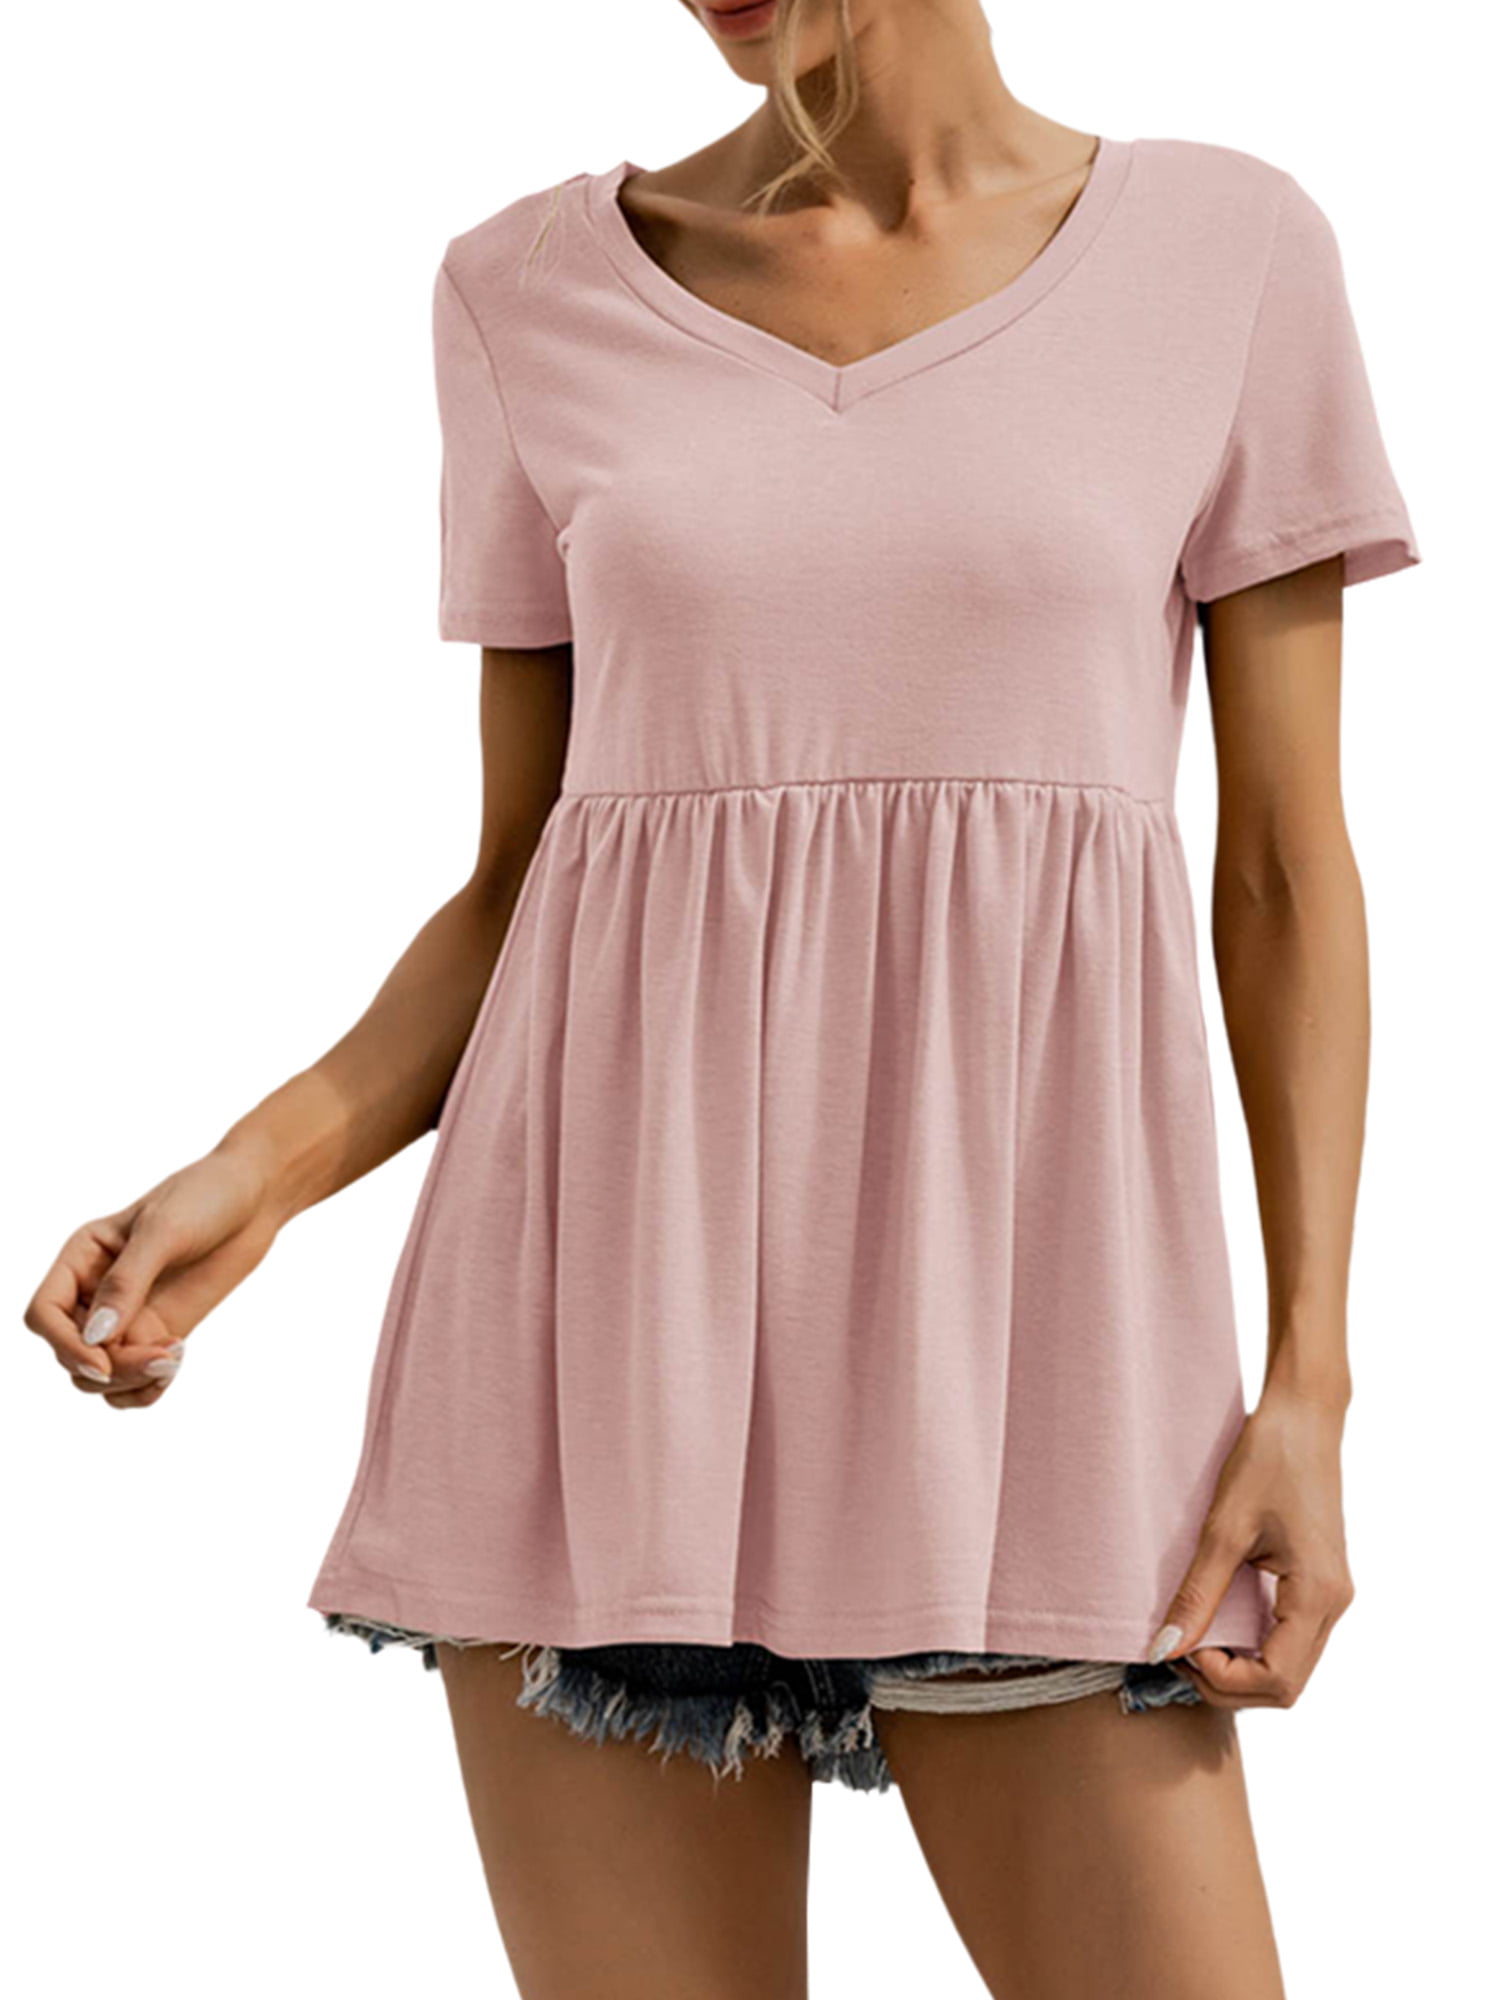 Women Peplum Tops Summer Short Sleeve Plain Swing T-Shirts Ruffle Hem Babydoll Blouse Tops 